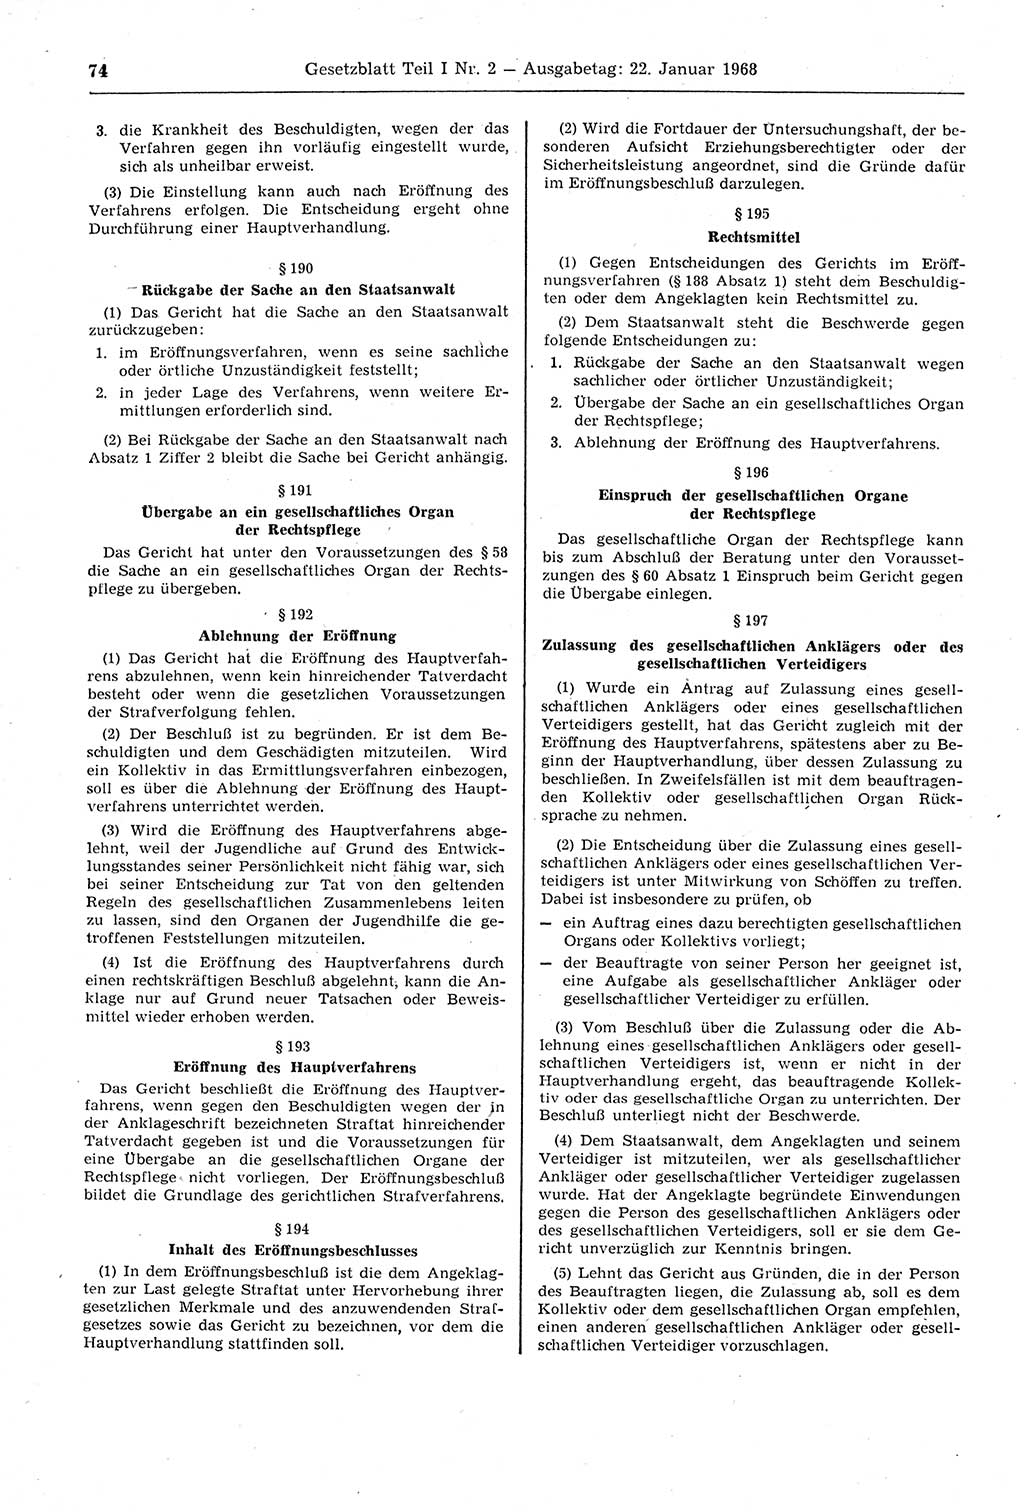 Gesetzblatt (GBl.) der Deutschen Demokratischen Republik (DDR) Teil Ⅰ 1968, Seite 74 (GBl. DDR Ⅰ 1968, S. 74)